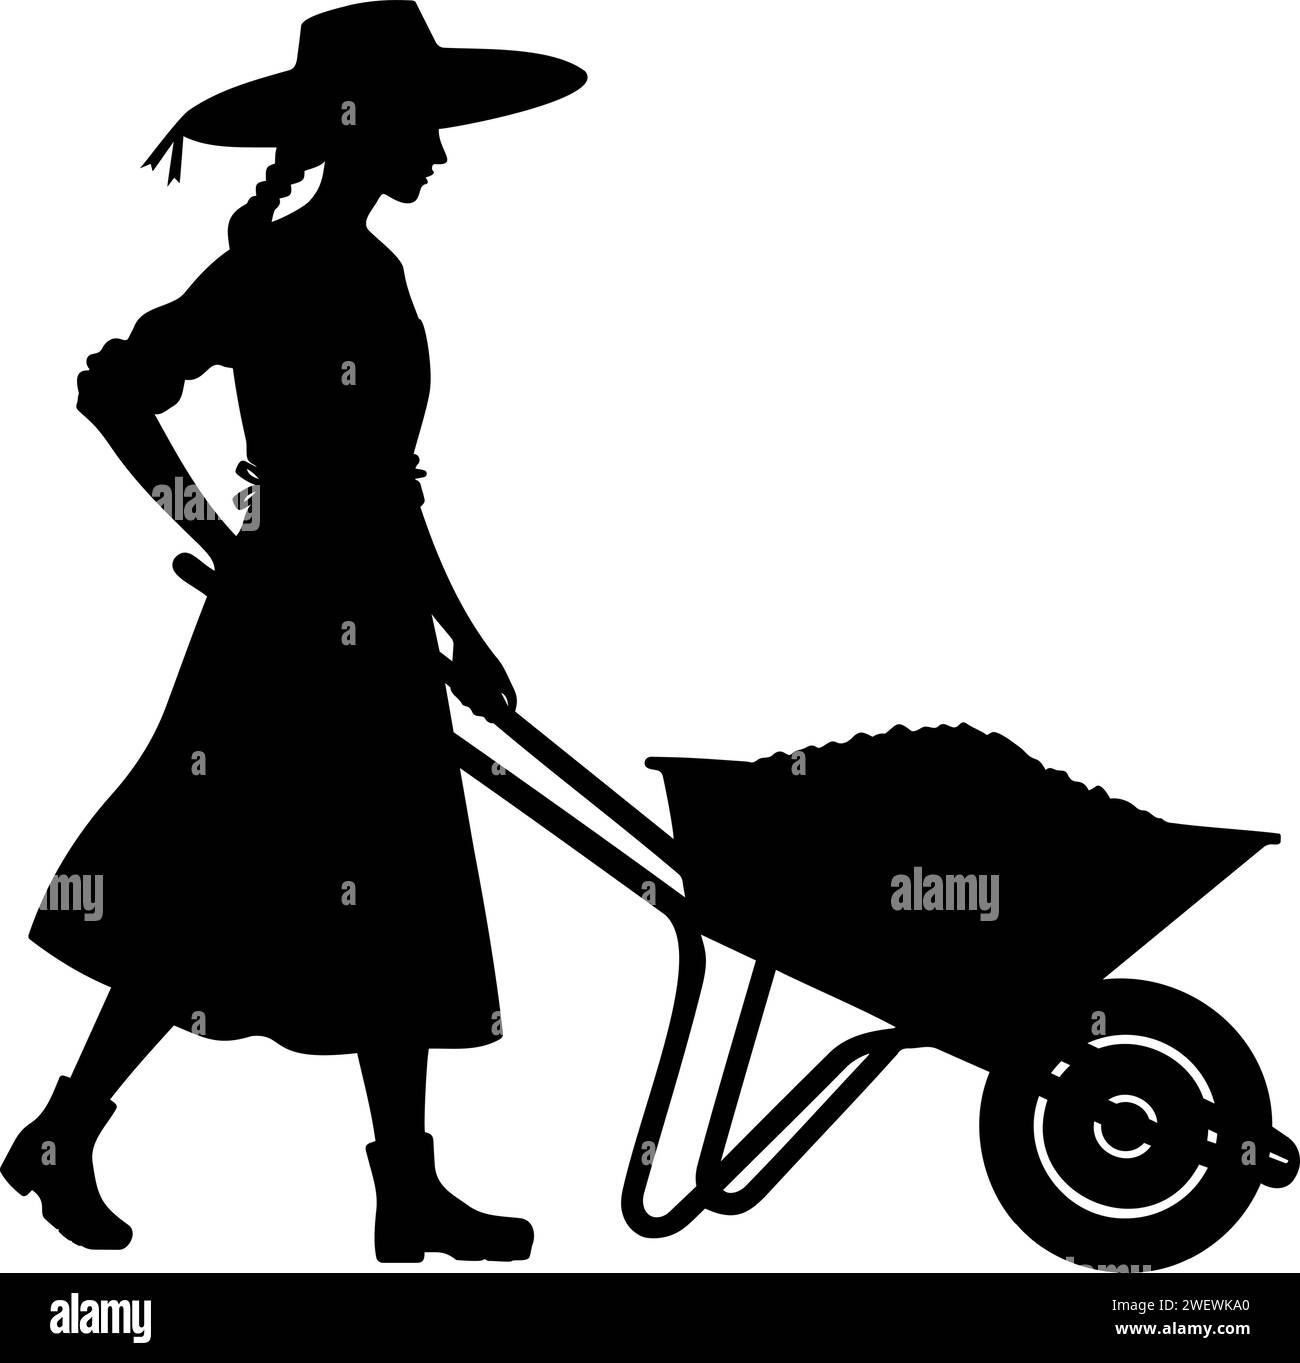 Woman Farmer with a wheelbarrow silhouette. Vector illustration Stock Vector